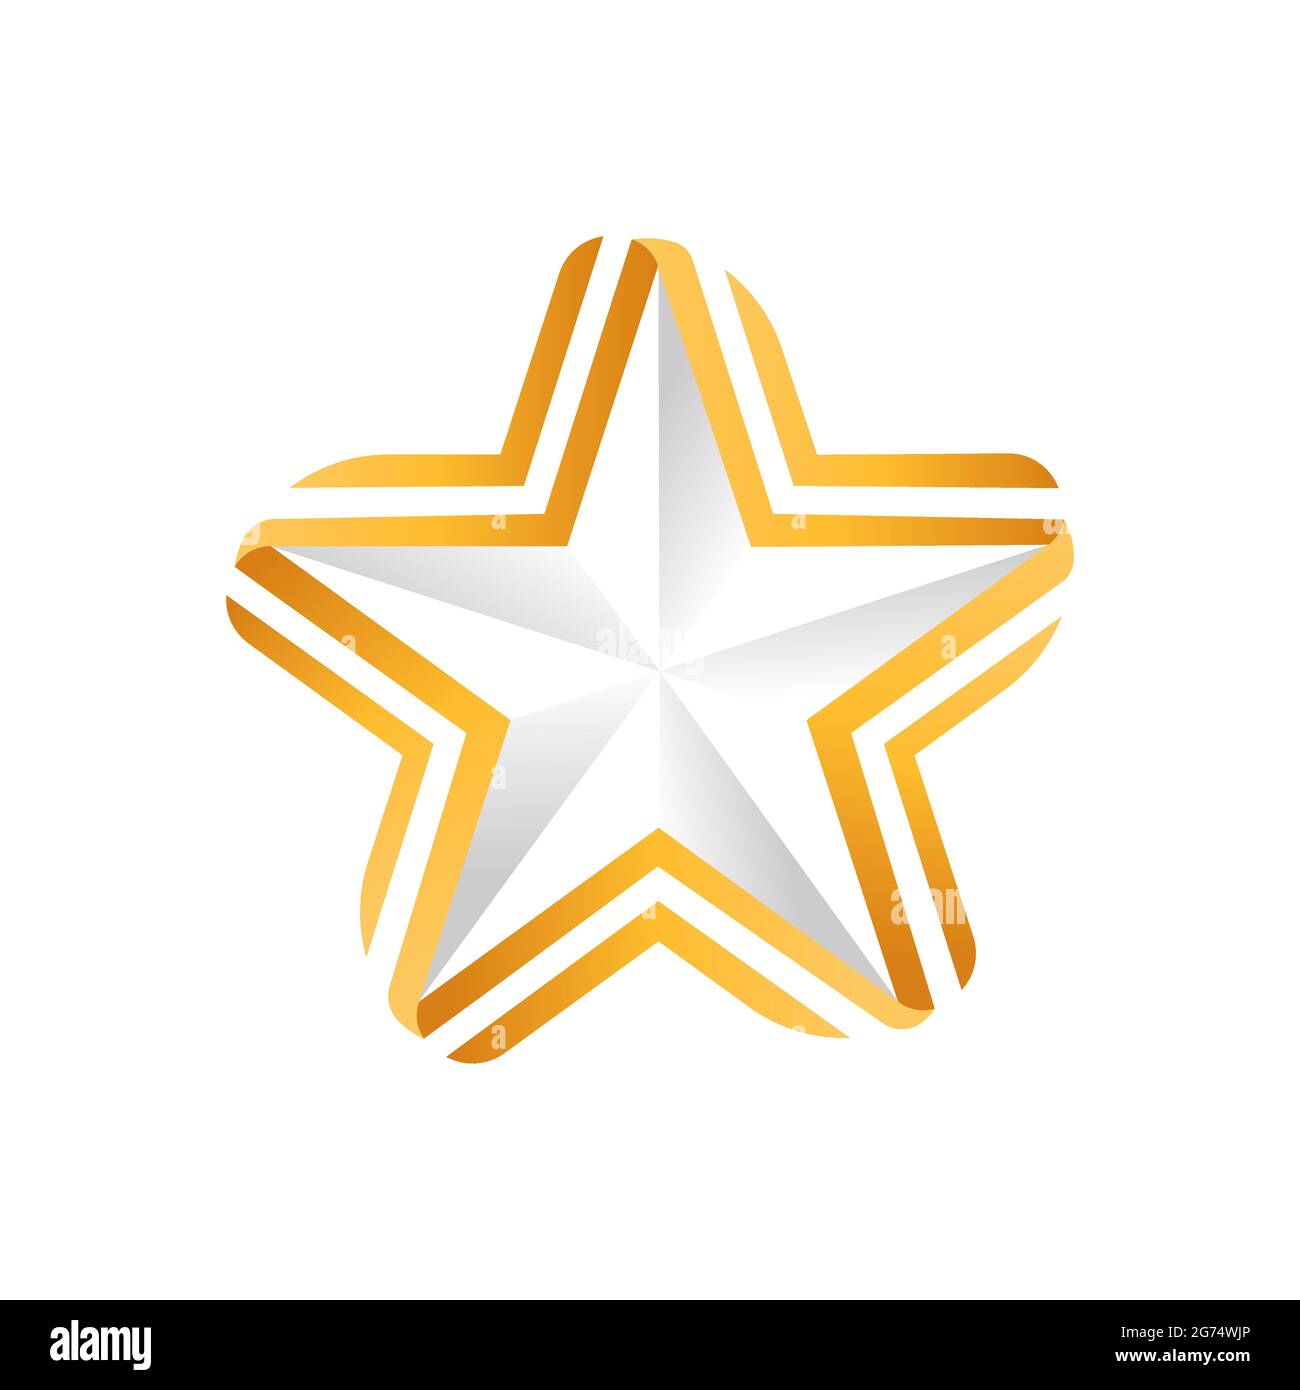 Modèle abstrait Star logo Icon Design Vector. Concept de logo Star simple et élégant. Modèle de dessin vectoriel d'icône de logo Star pour les entreprises, la marque Illustration de Vecteur